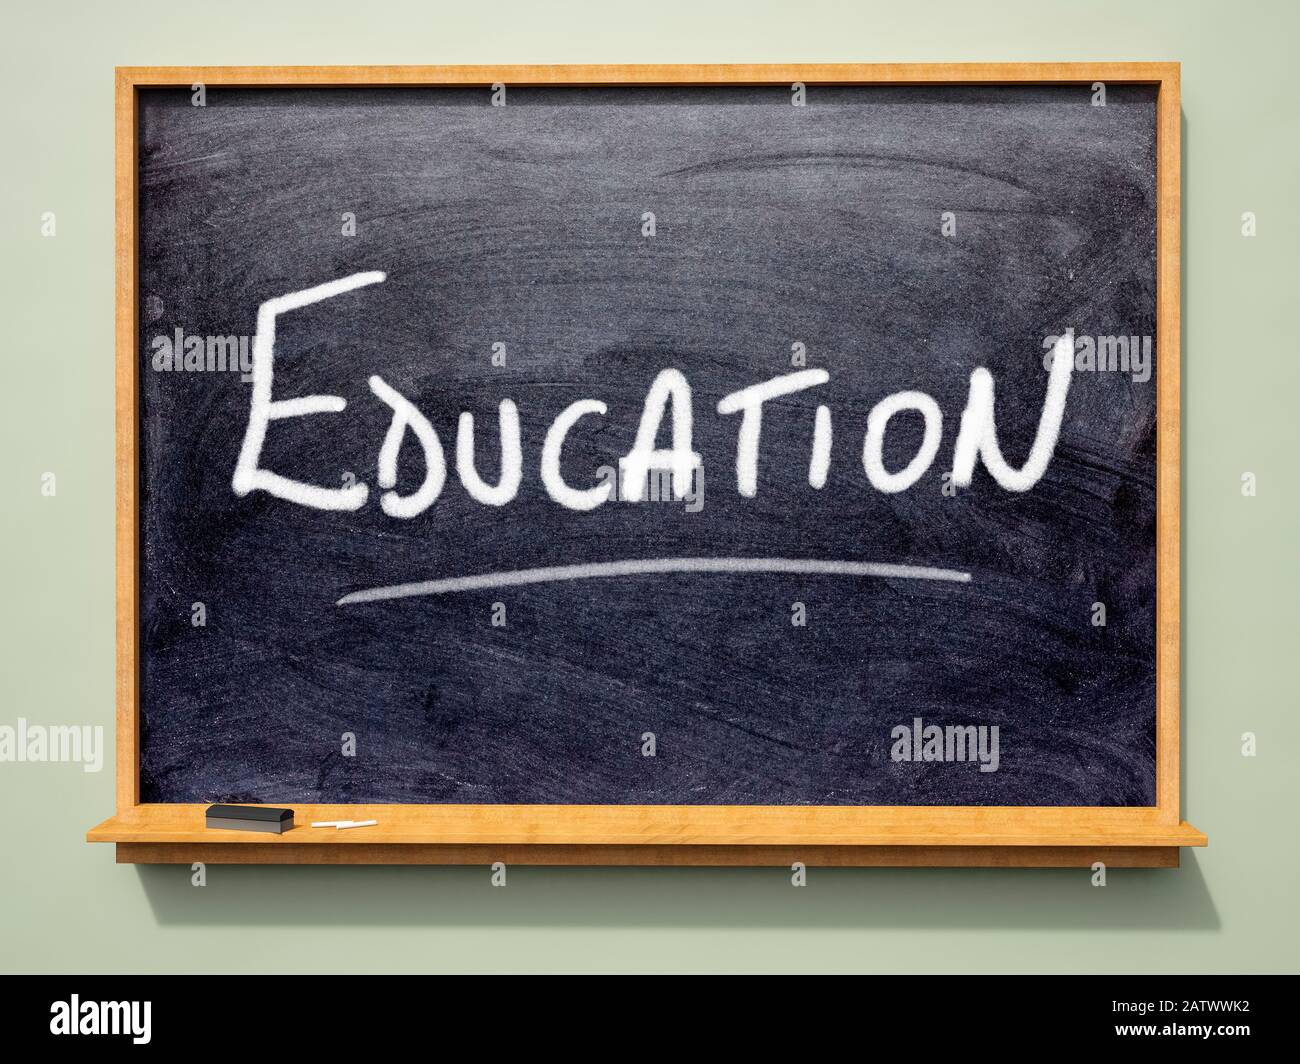 Tableau noir de l'école avec "Education" écrit dessus Banque D'Images